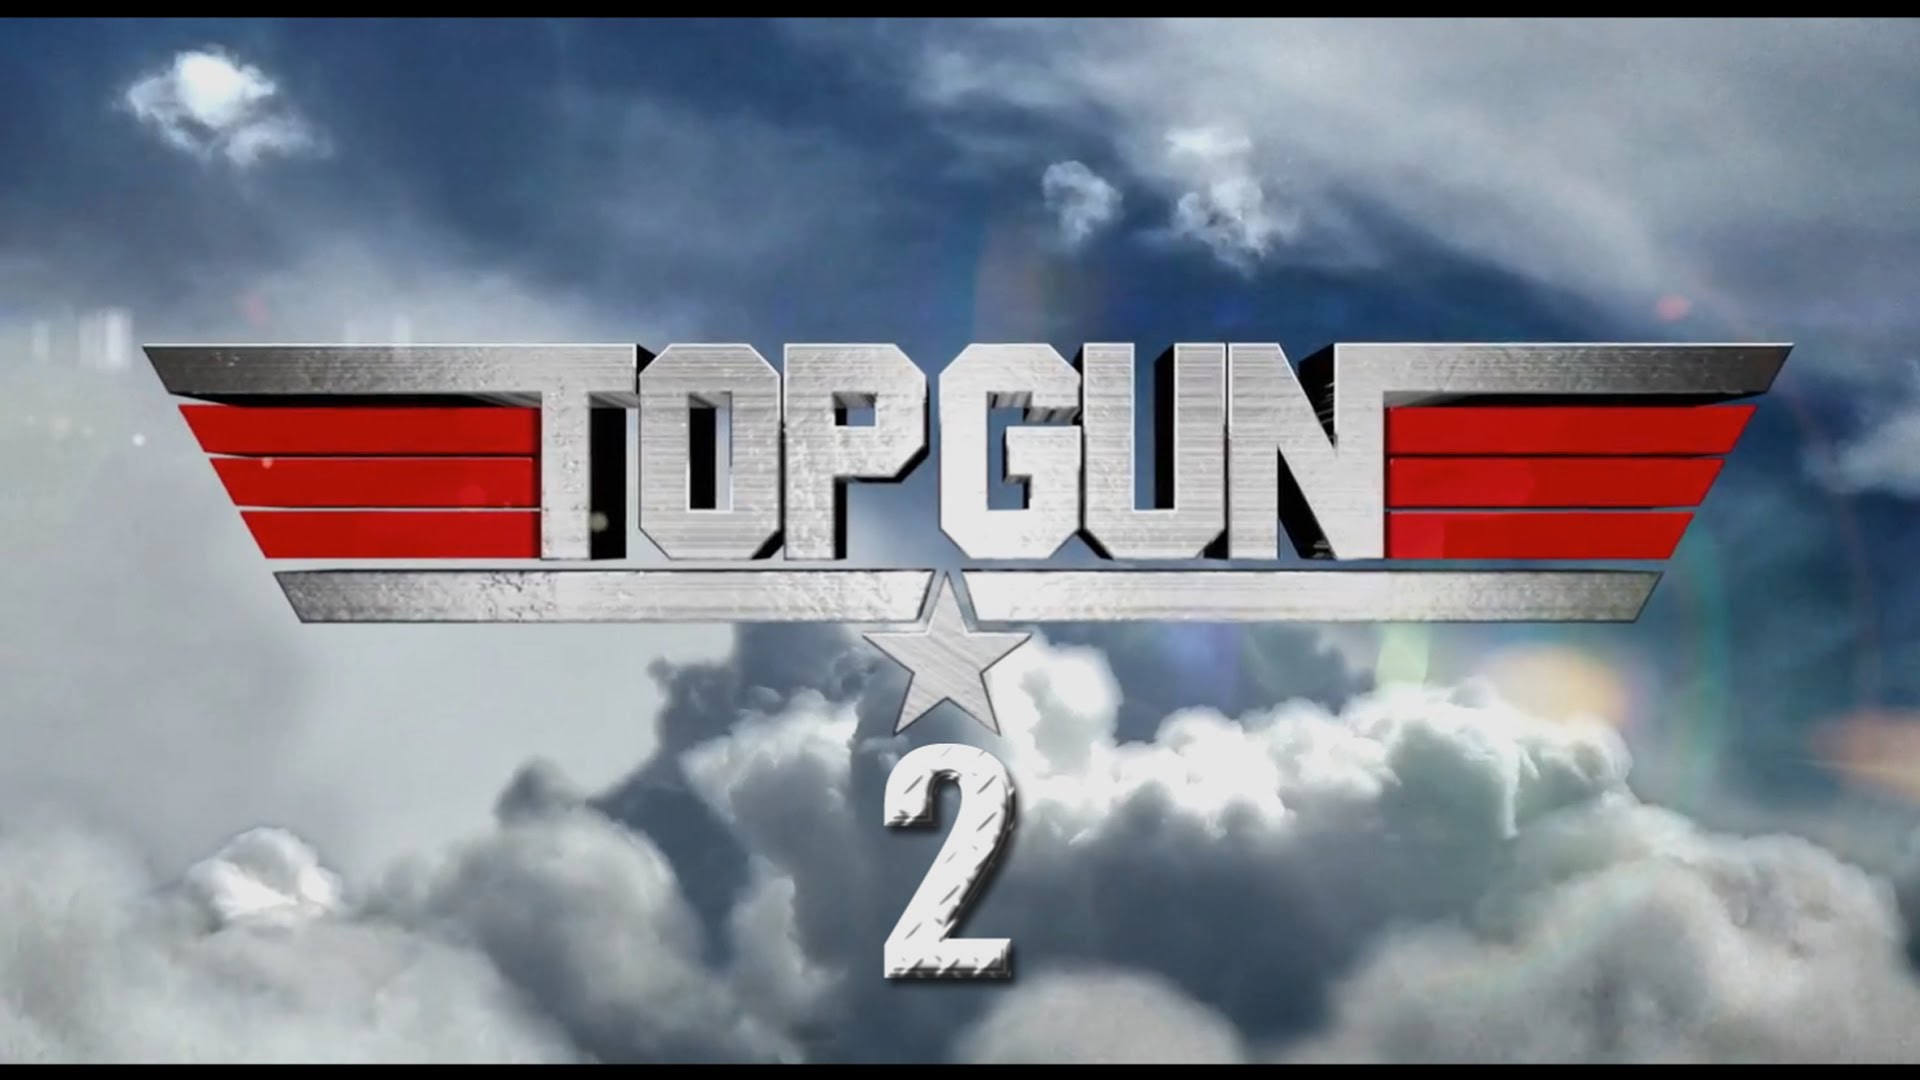  Tom Cruise confirma que hará “Top Gun 2”